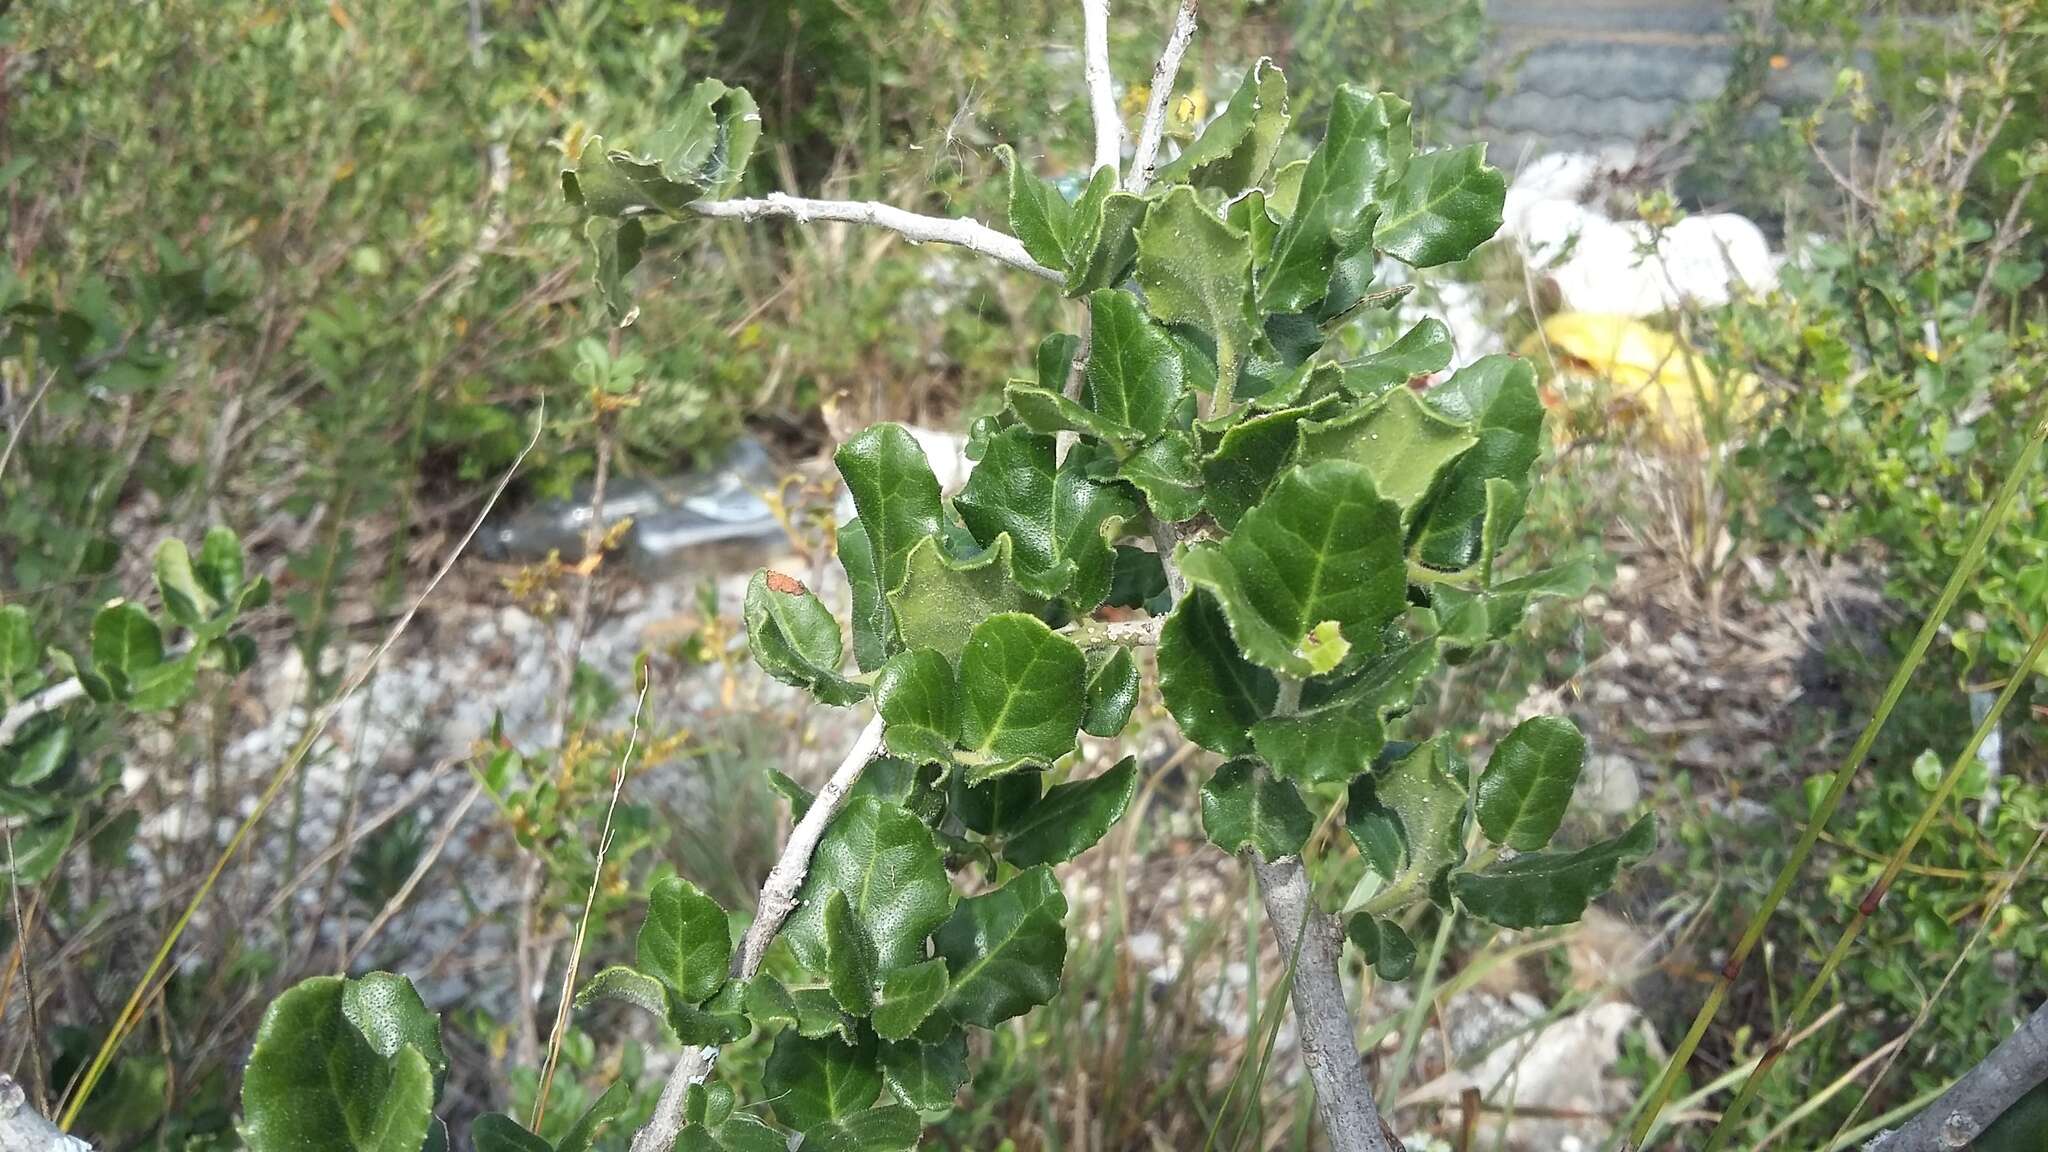 Image de Mystroxylon aethiopicum subsp. aethiopicum